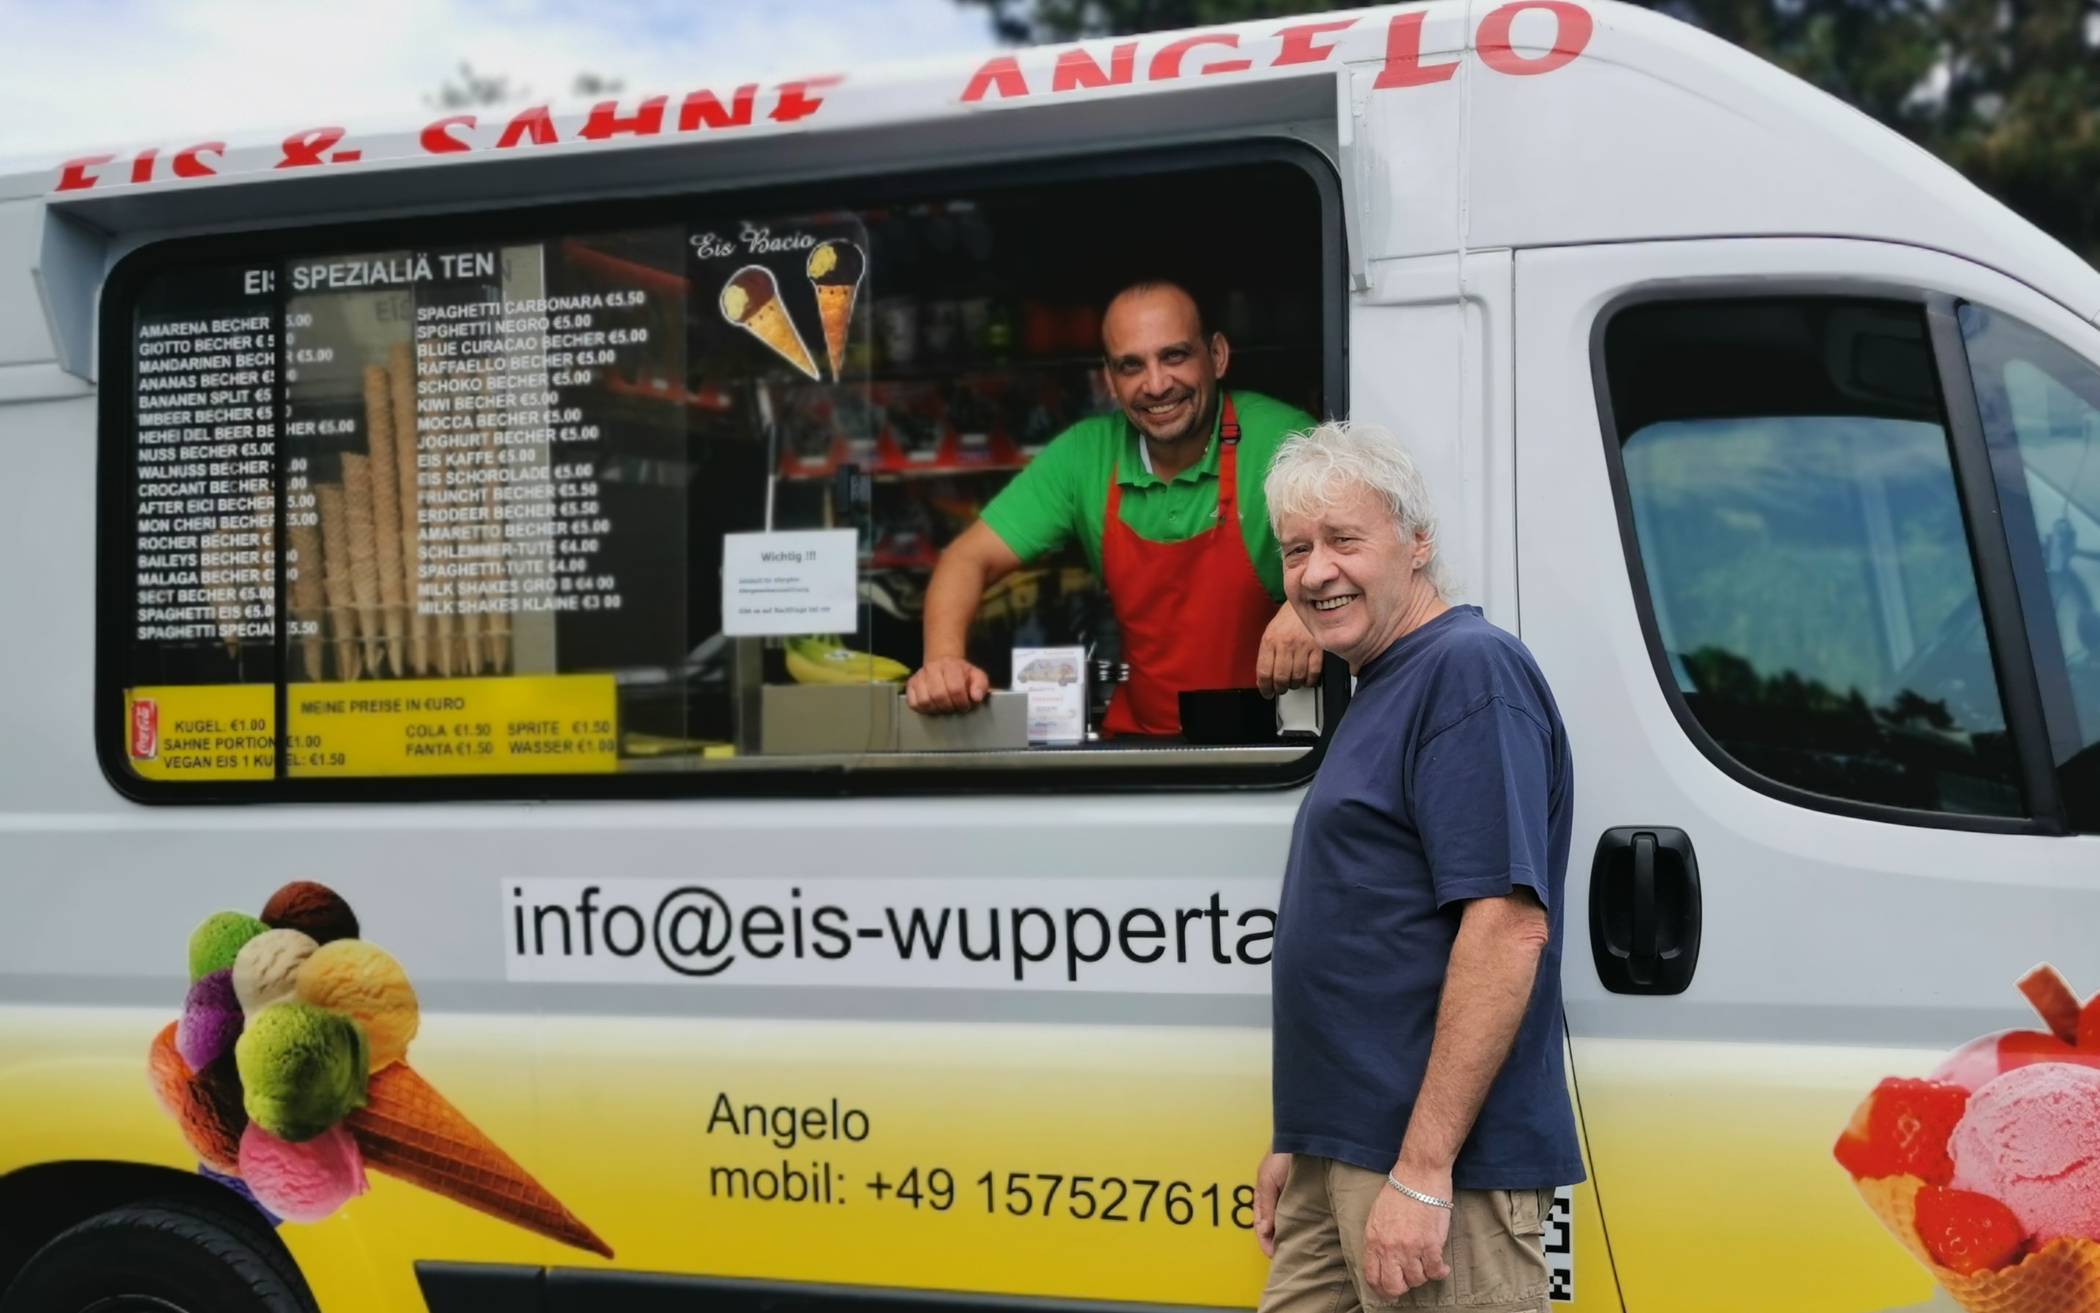  Eismann Angelo La Rizza und sein „Manager“ Udo Bertram appellieren an ihre Kunden, das Eis doch lieber in der Waffel zu kaufen, um Plastikmüll zu vermeiden und der Umwelt etwas Gutes zu tun. 